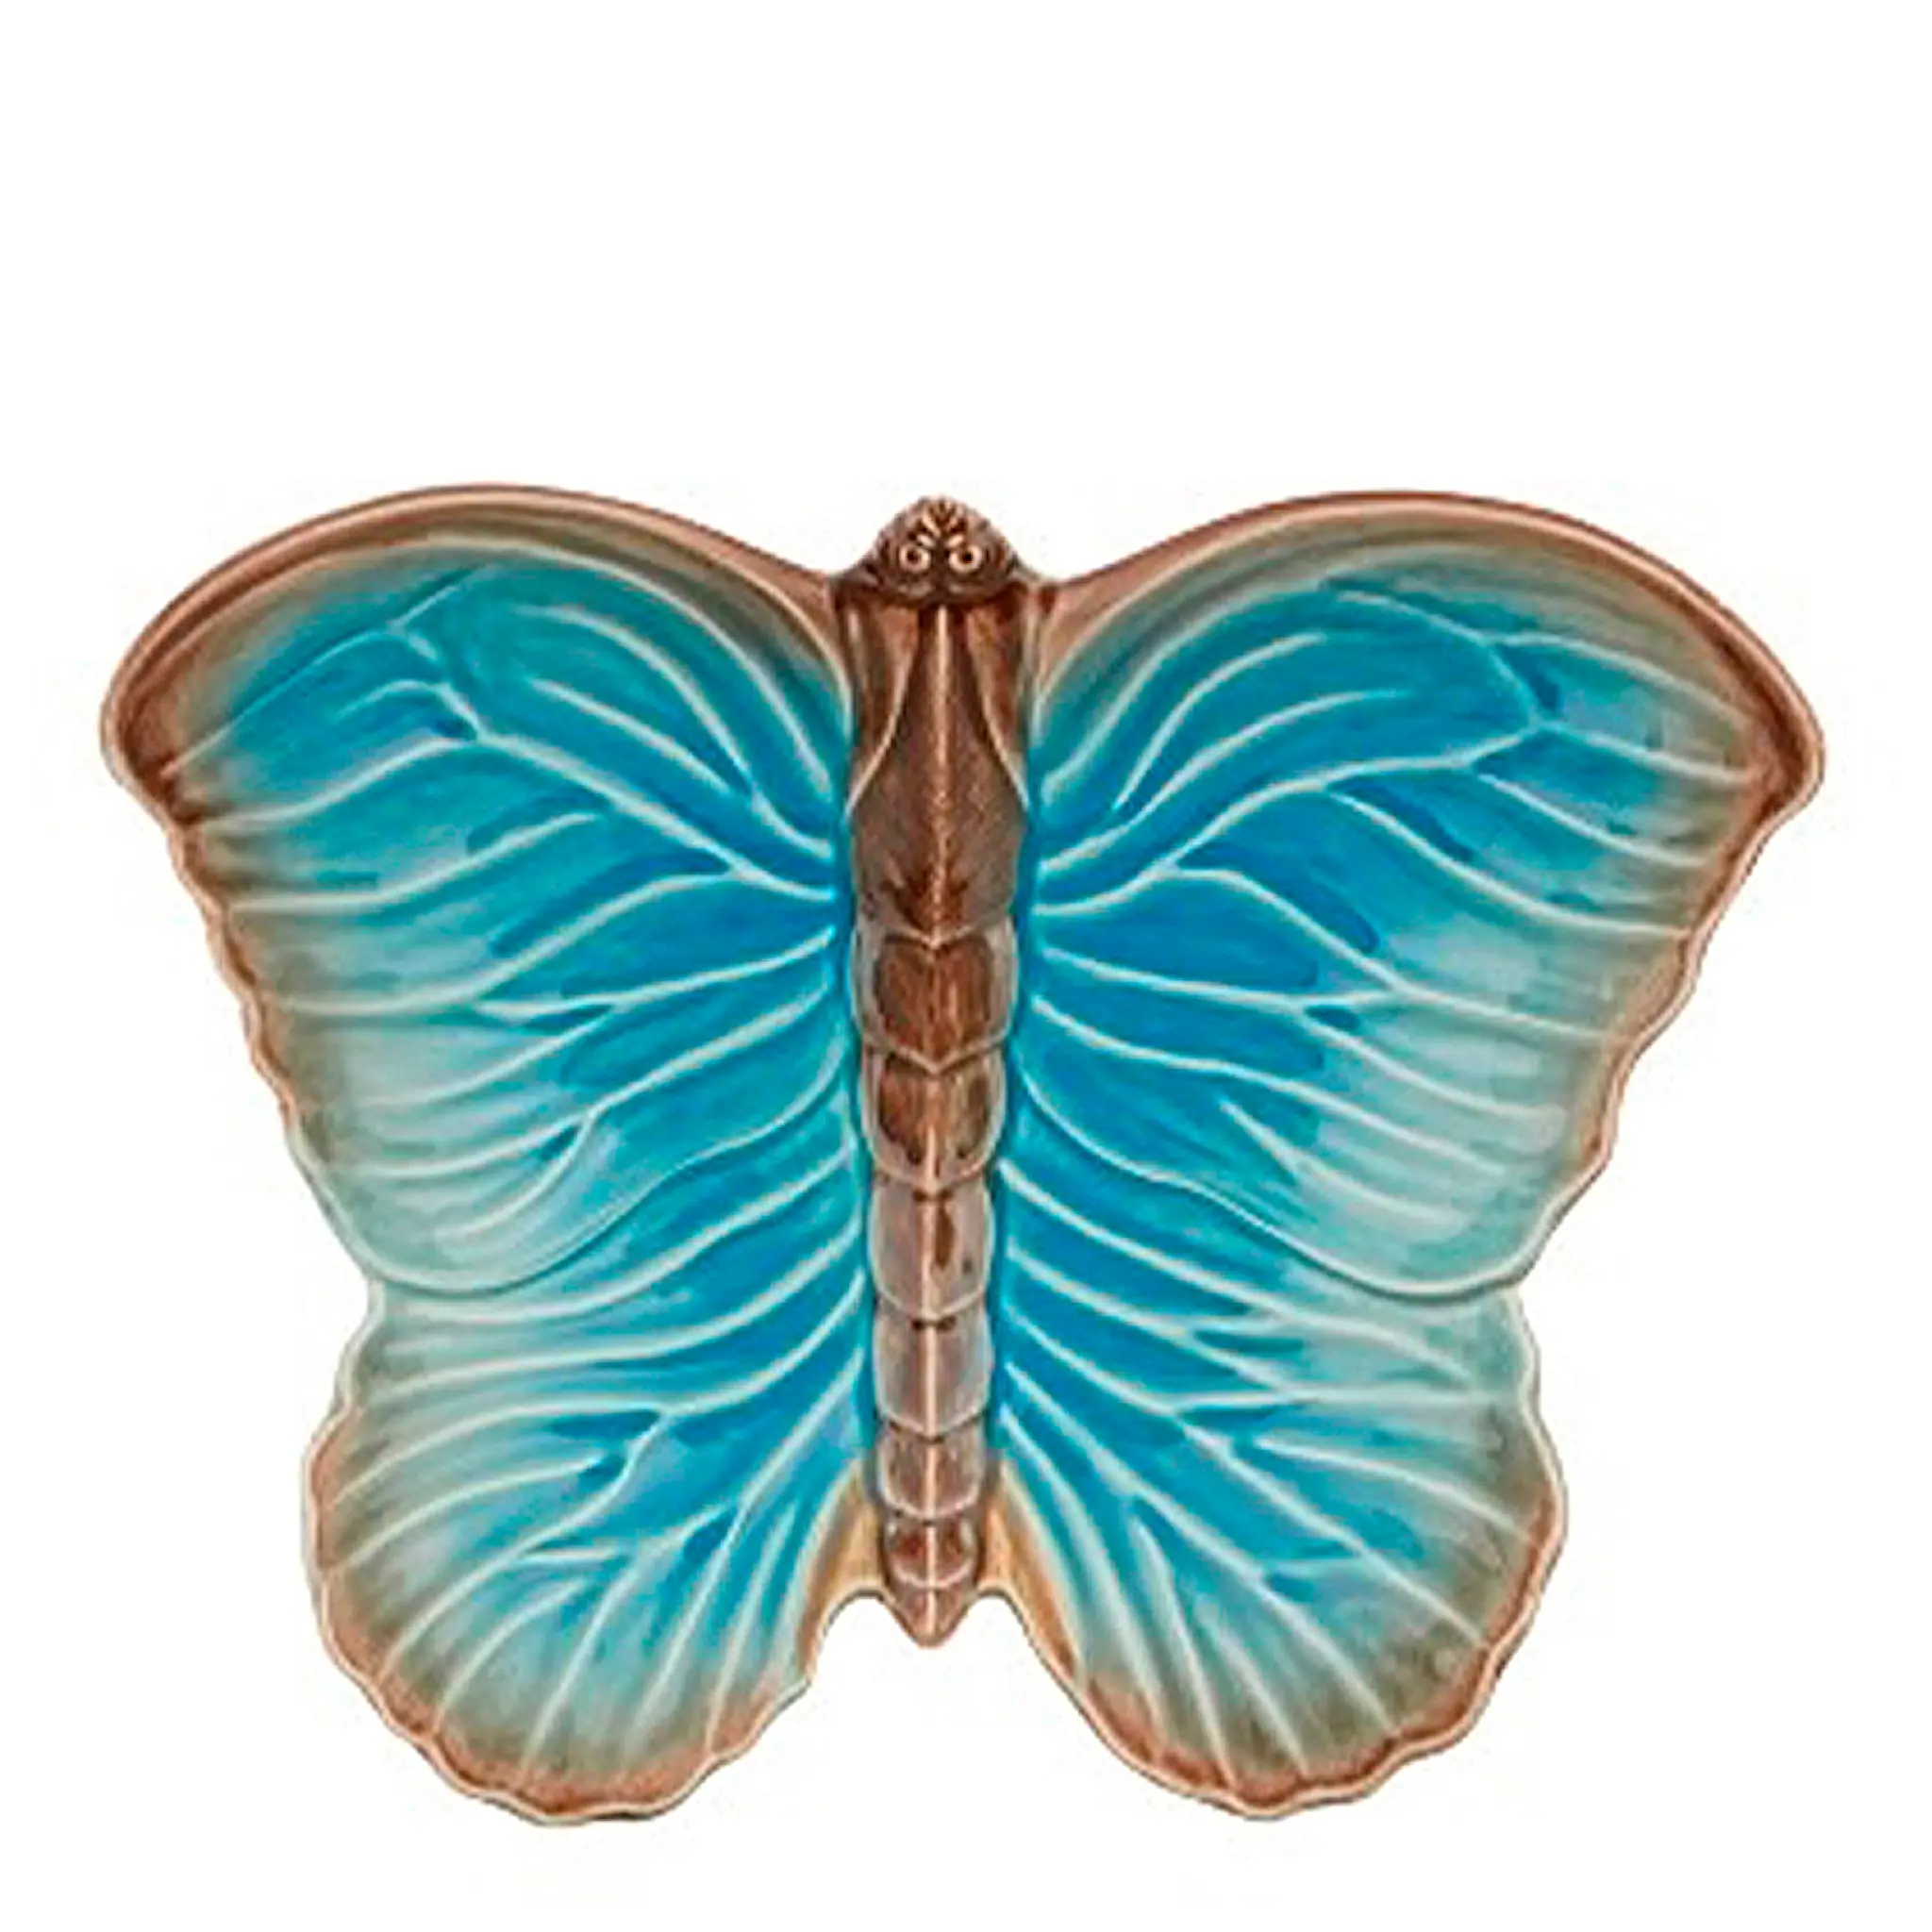 Bordallo Pinheiro Cloudy Butterfly Fat 33 cm